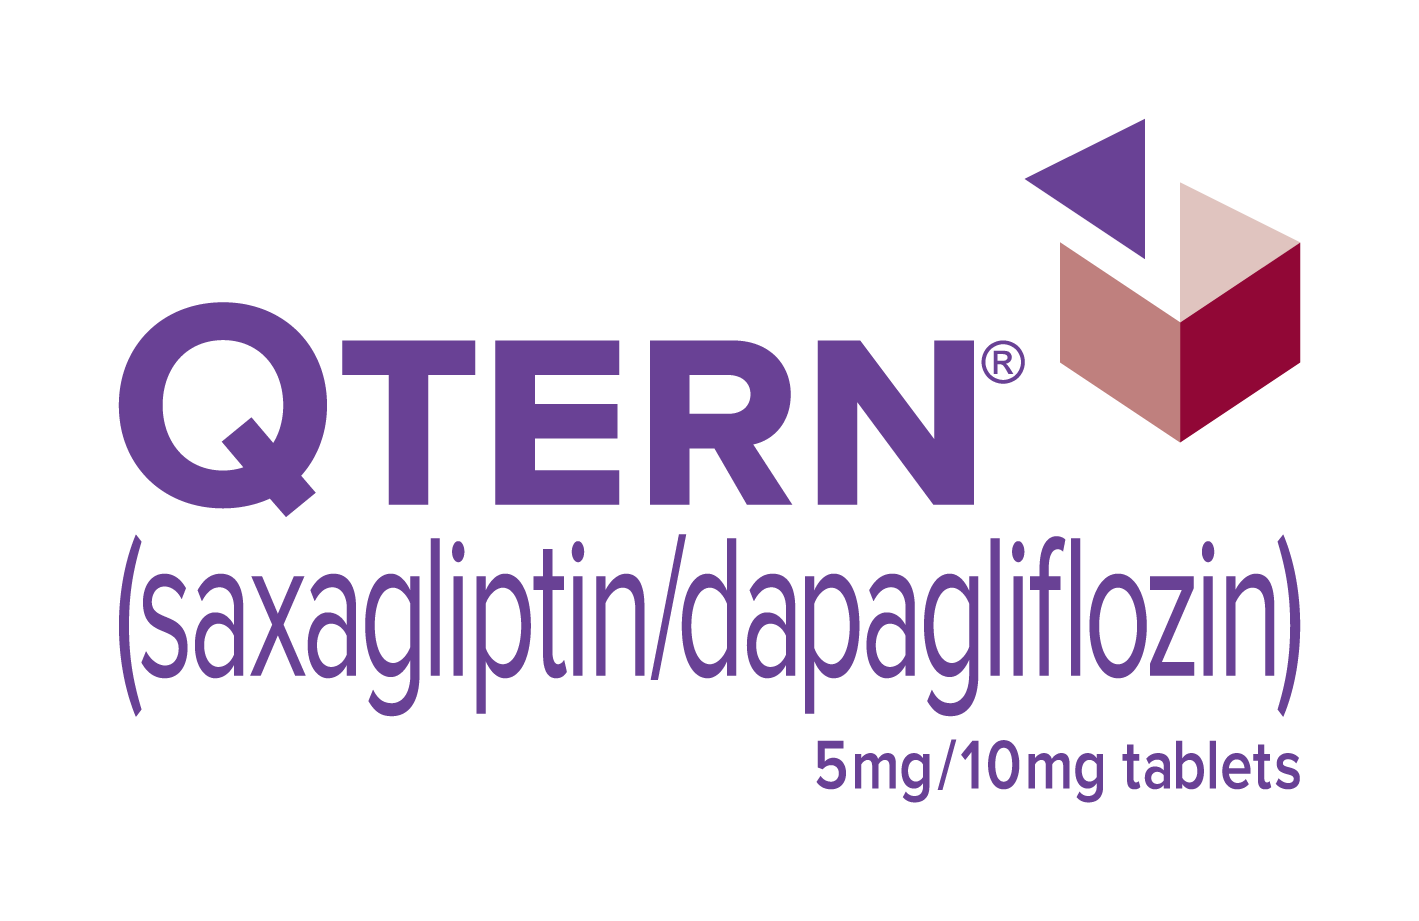 Qtern / Кьютёрн / Кутерн (саксаглиптин + дапаглифлозин) — старый логотип